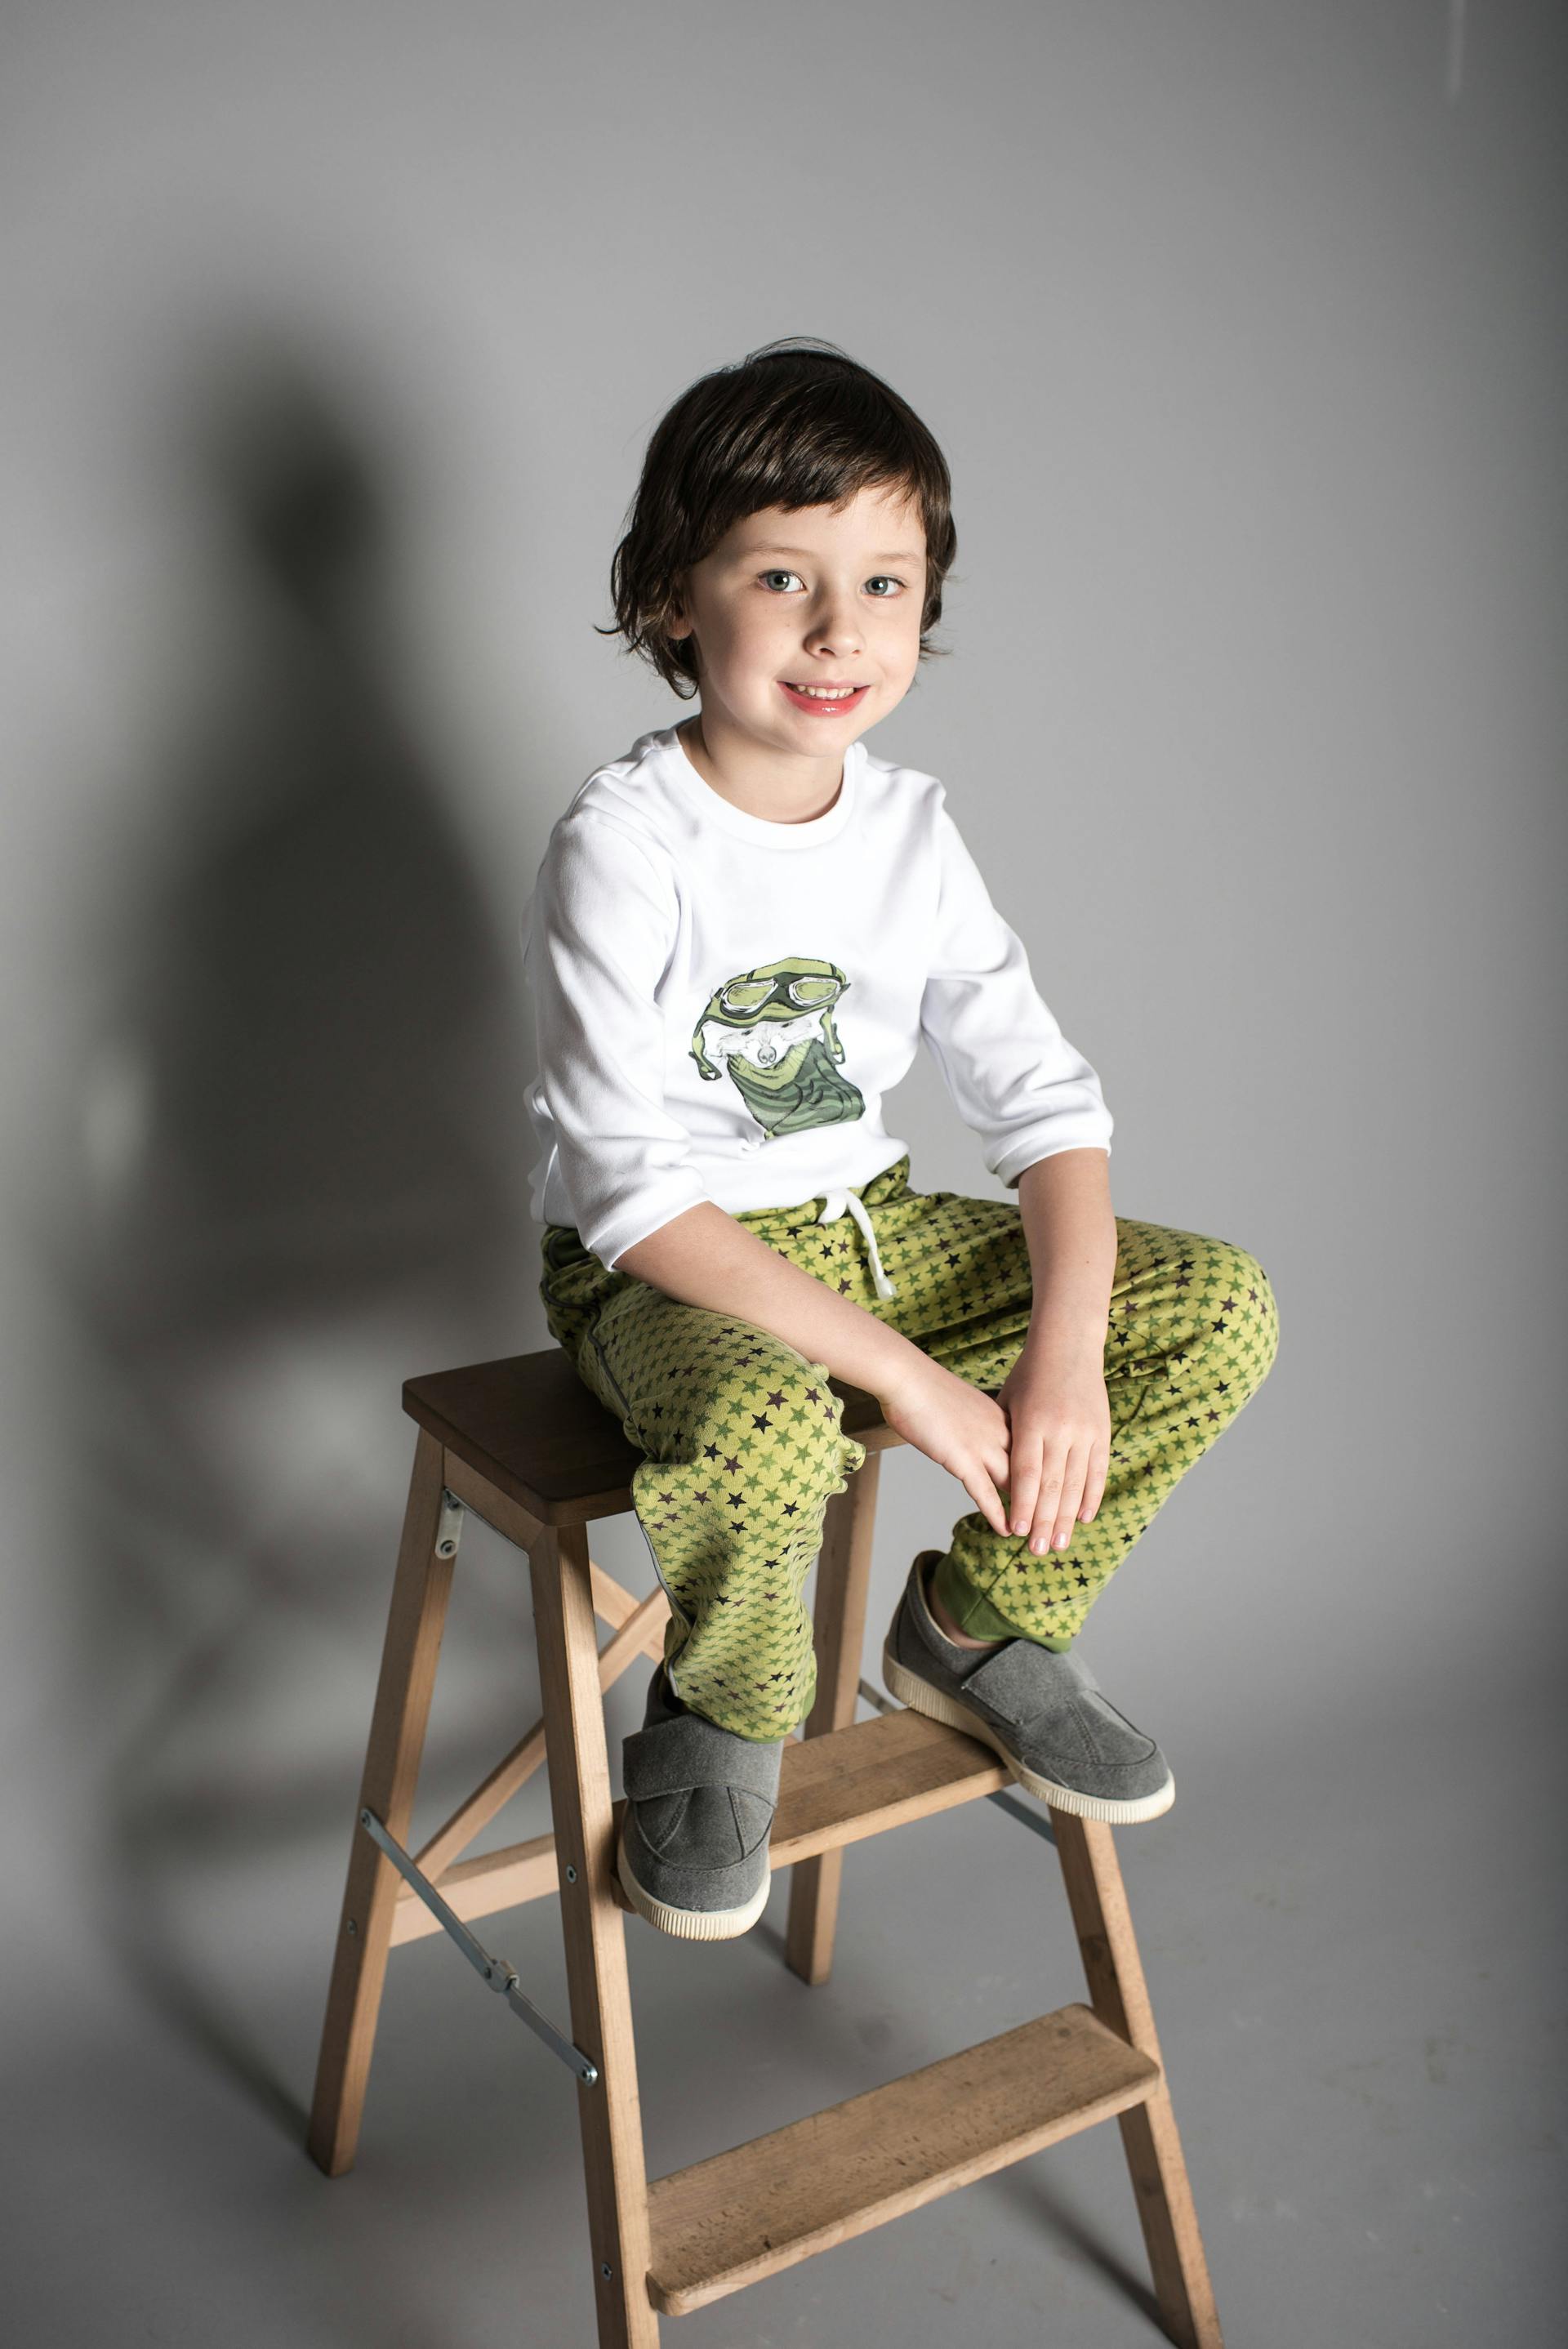 Niño sonriente sentado en un taburete | Fuente: Pexels